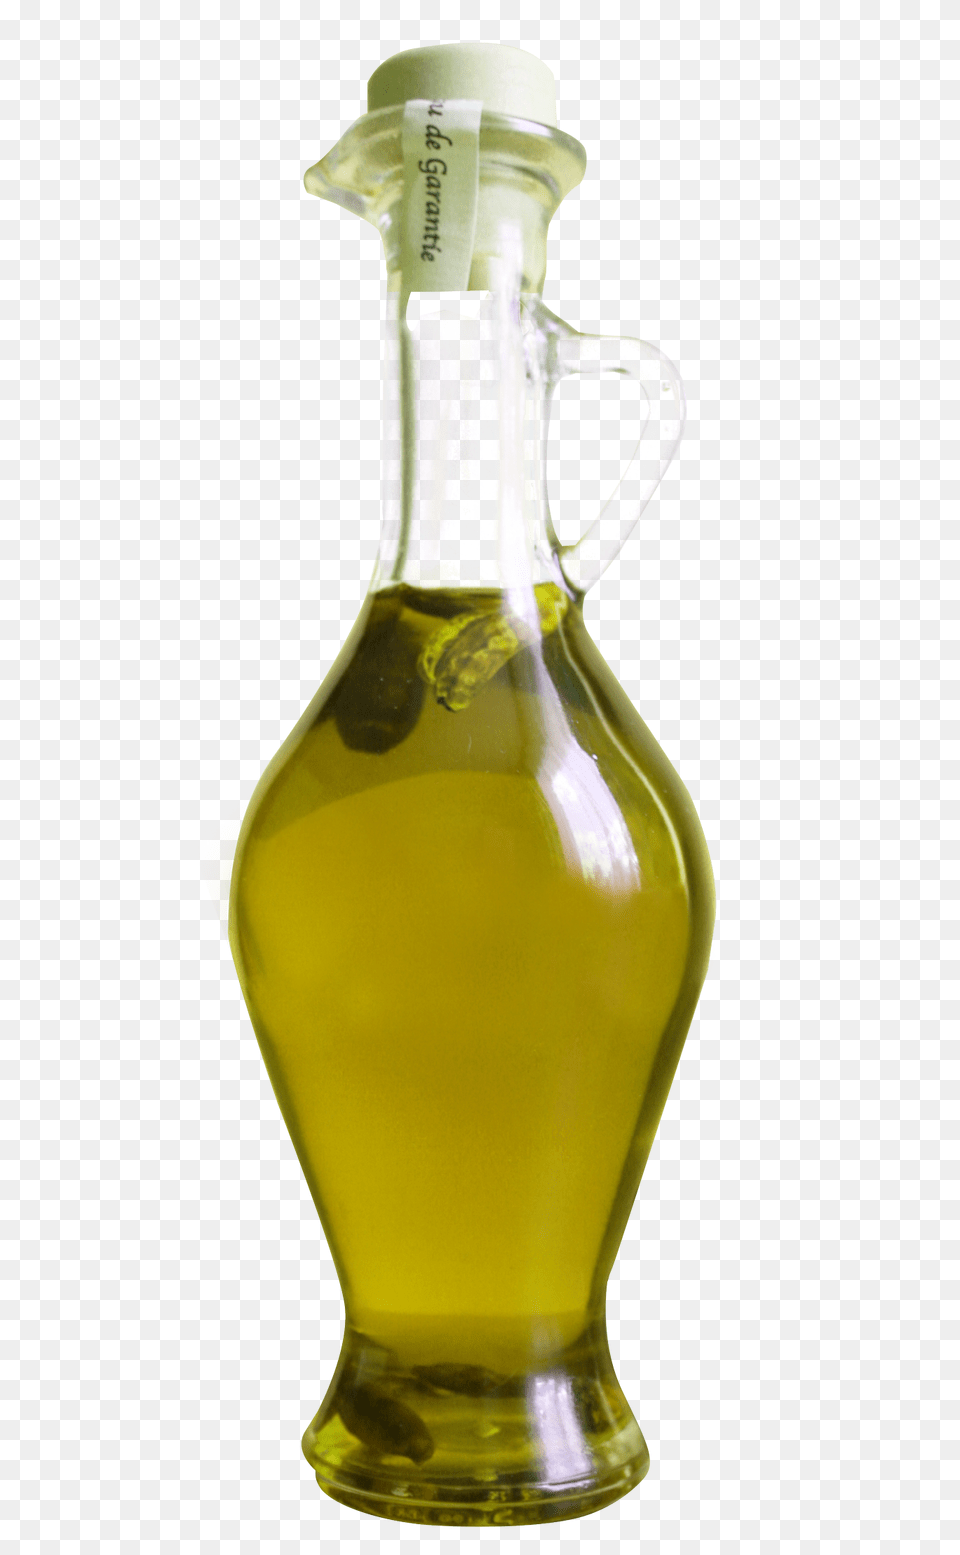 Olive Oil Bottle Cooking Oil, Food, Alcohol, Beer Png Image